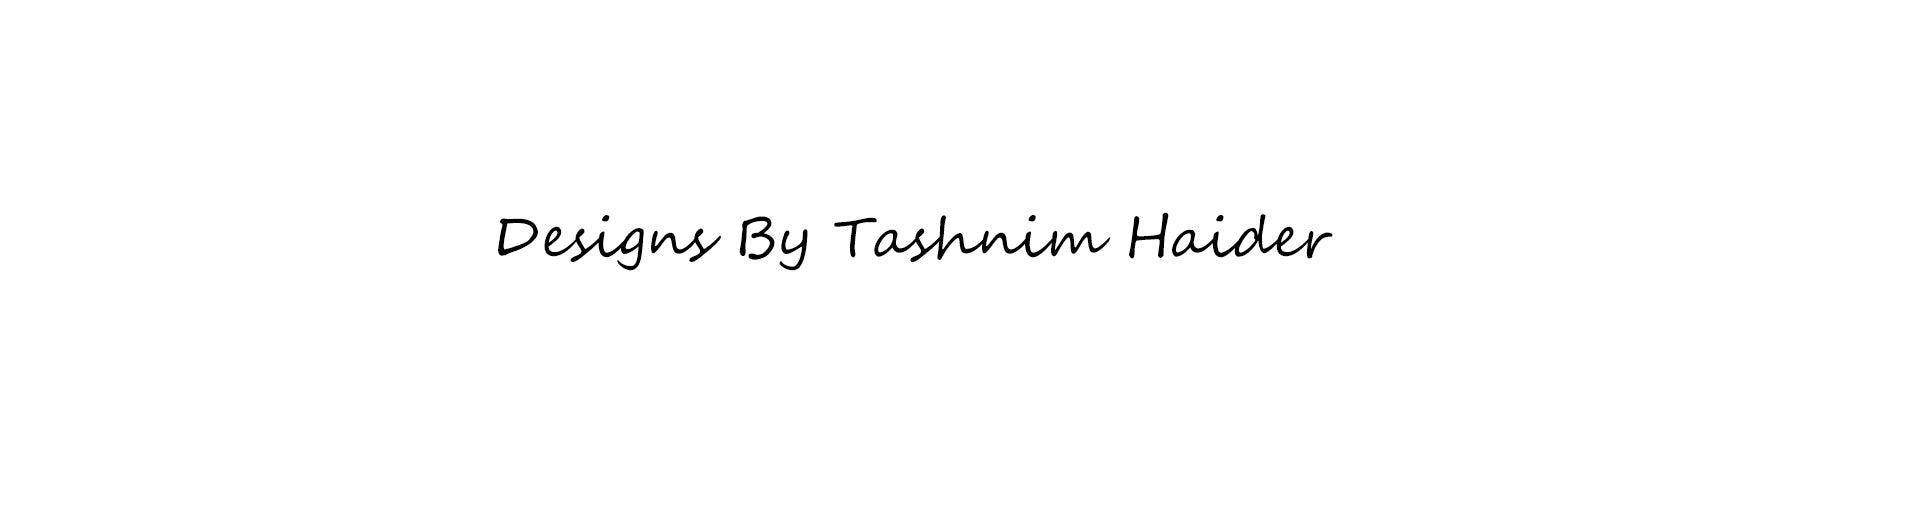 Tashnim Haider